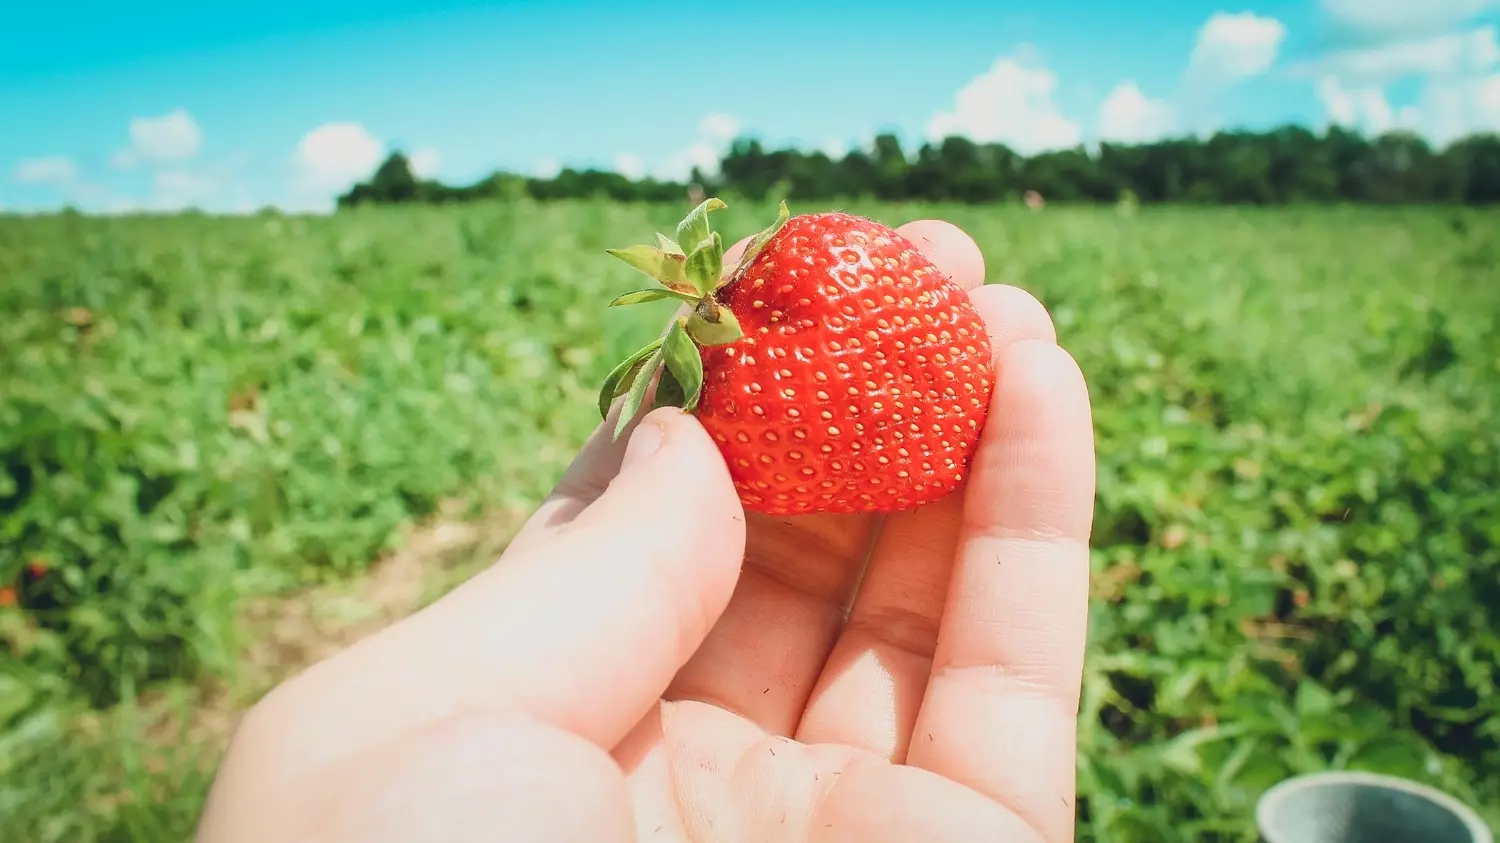 Самые вкусные ягоды — на плантациях, но если до них далеко, покупать свежие ягоды лучше в супермаркетах, а не на стихийных рынках.